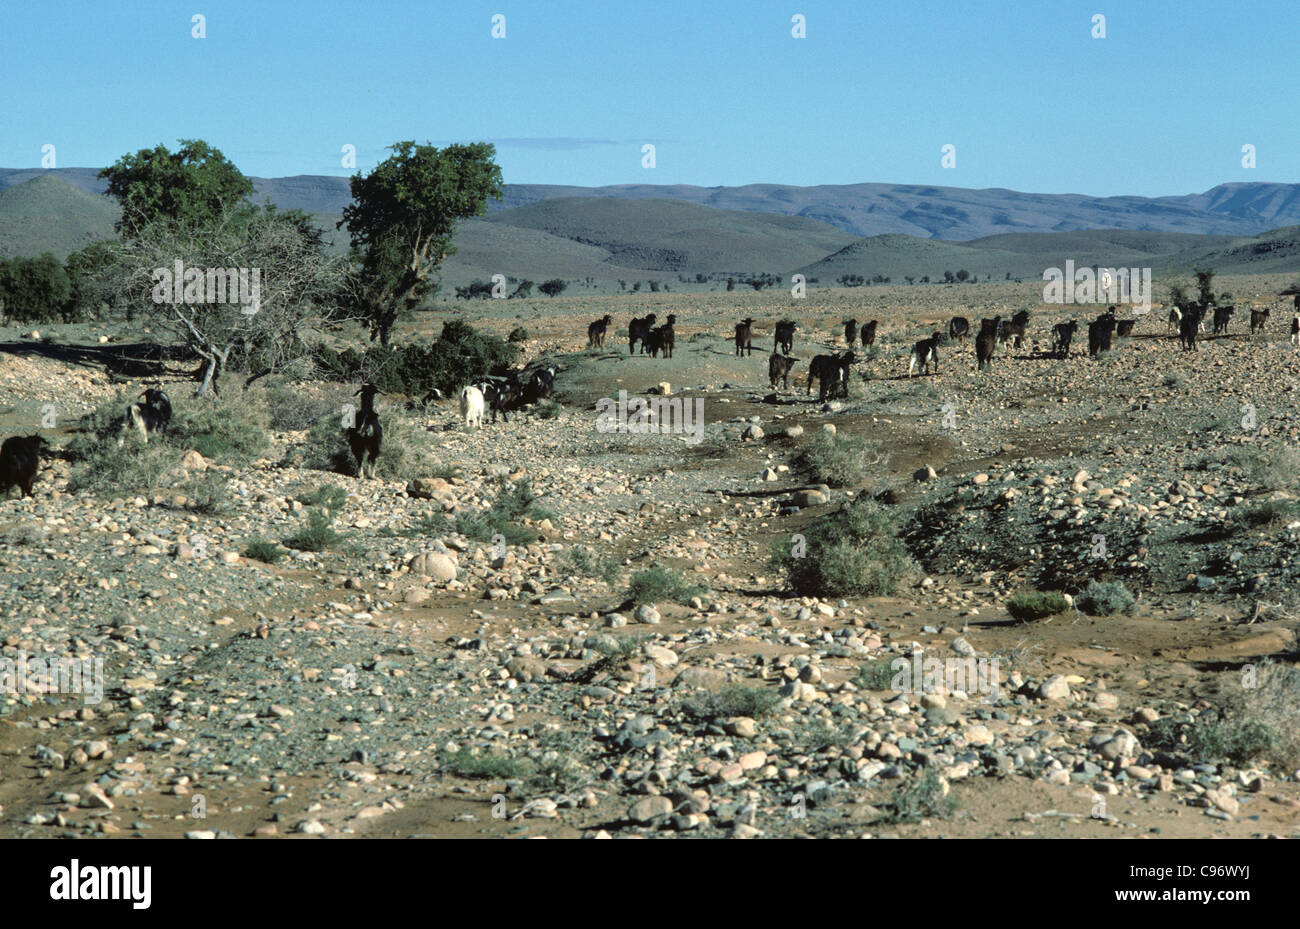 Rebaño de cabras de escalada de árbol en pre-Sáhara semi-desierto, Marruecos Foto de stock